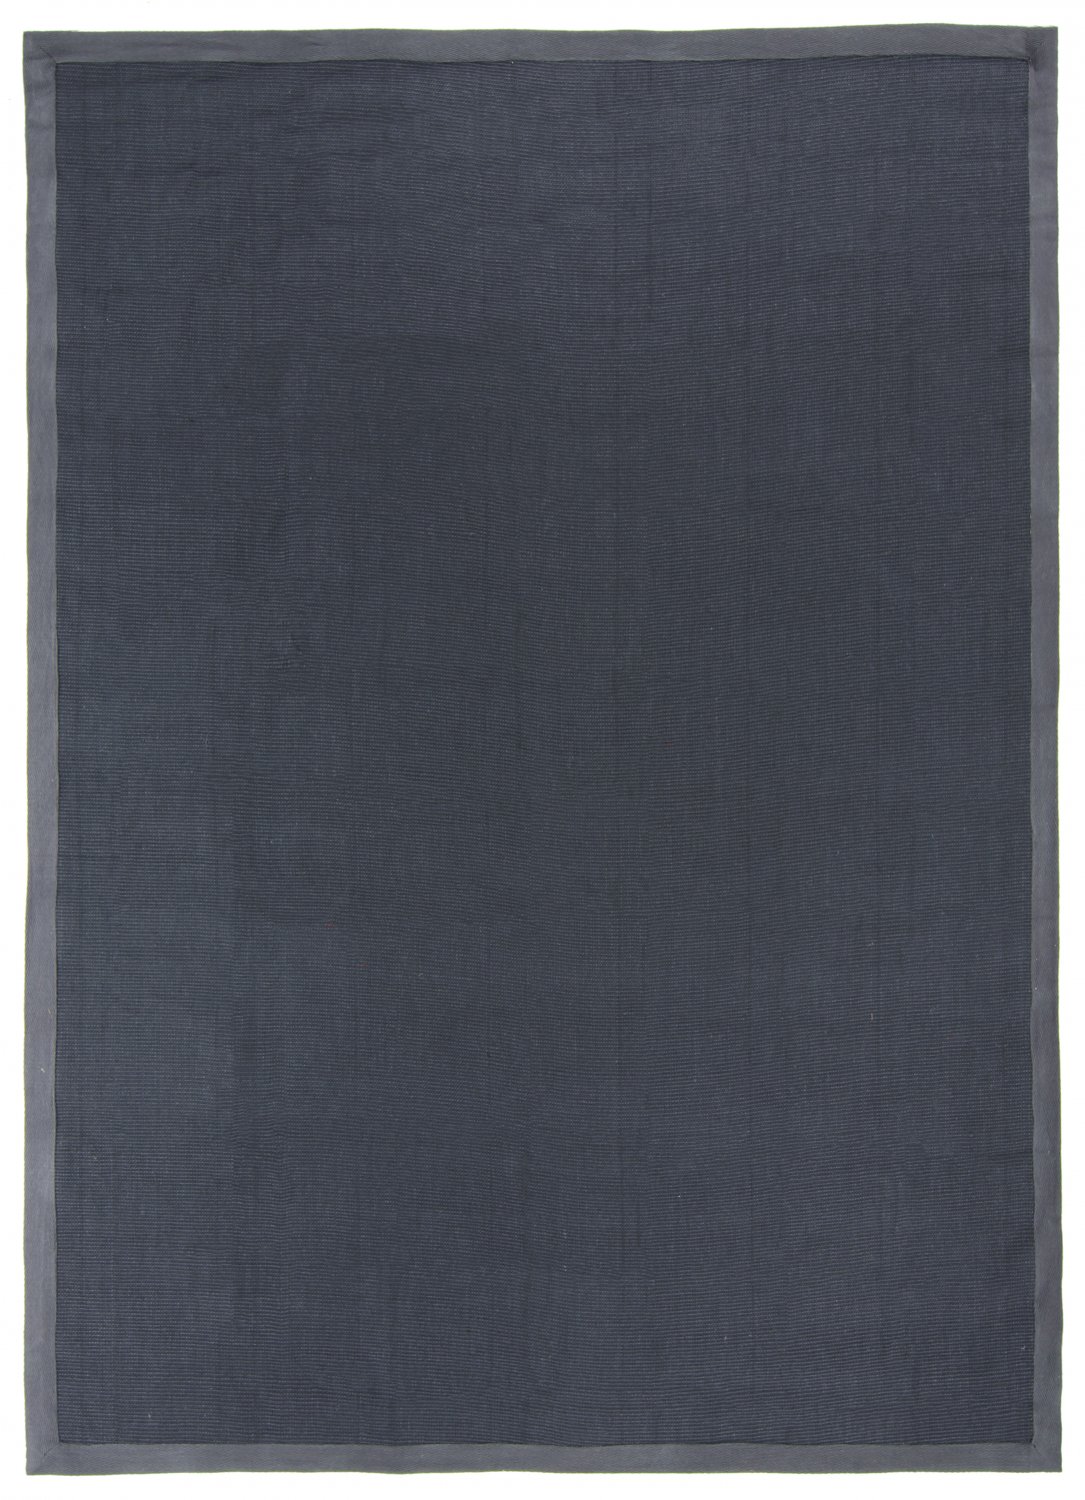 Sisalmatta - Agave (mörkgrå)